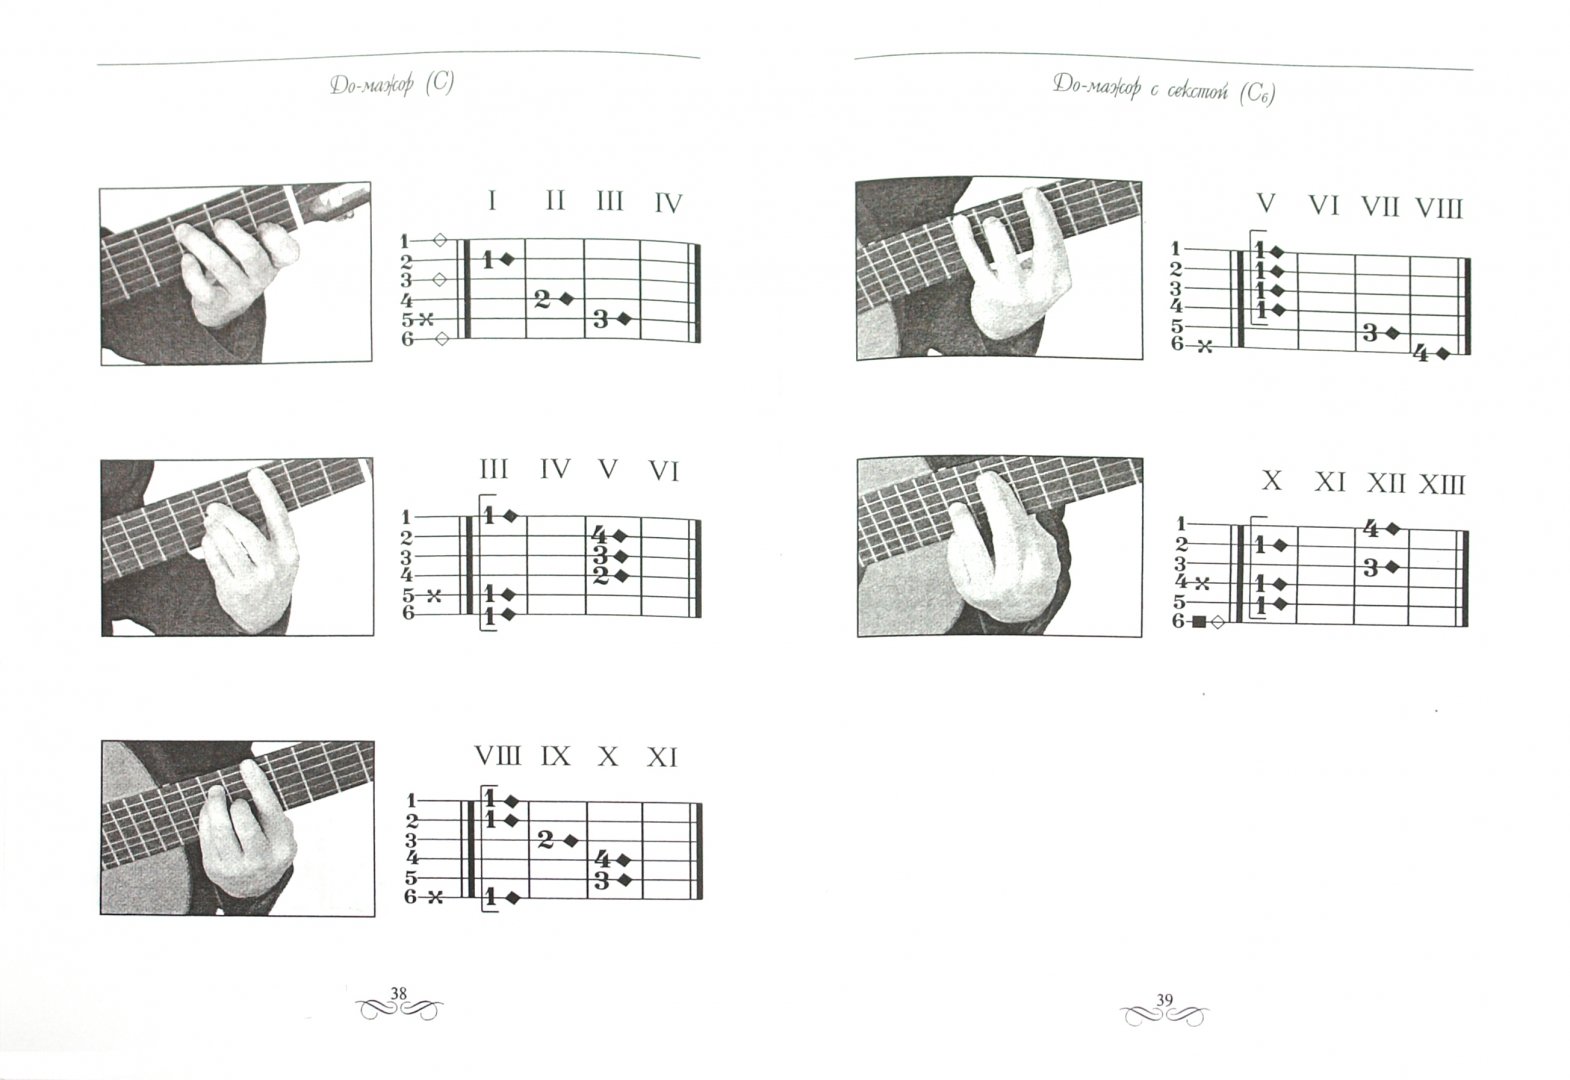 4 аккорда для начинающих. Аккорды для гитары для начинающих. Аккорды на гитаре 6 струн схема для начинающих. Схема гитарных аккордов для начинающих. Основные гитарные аккорды для начинающих на 6 струнной гитаре.